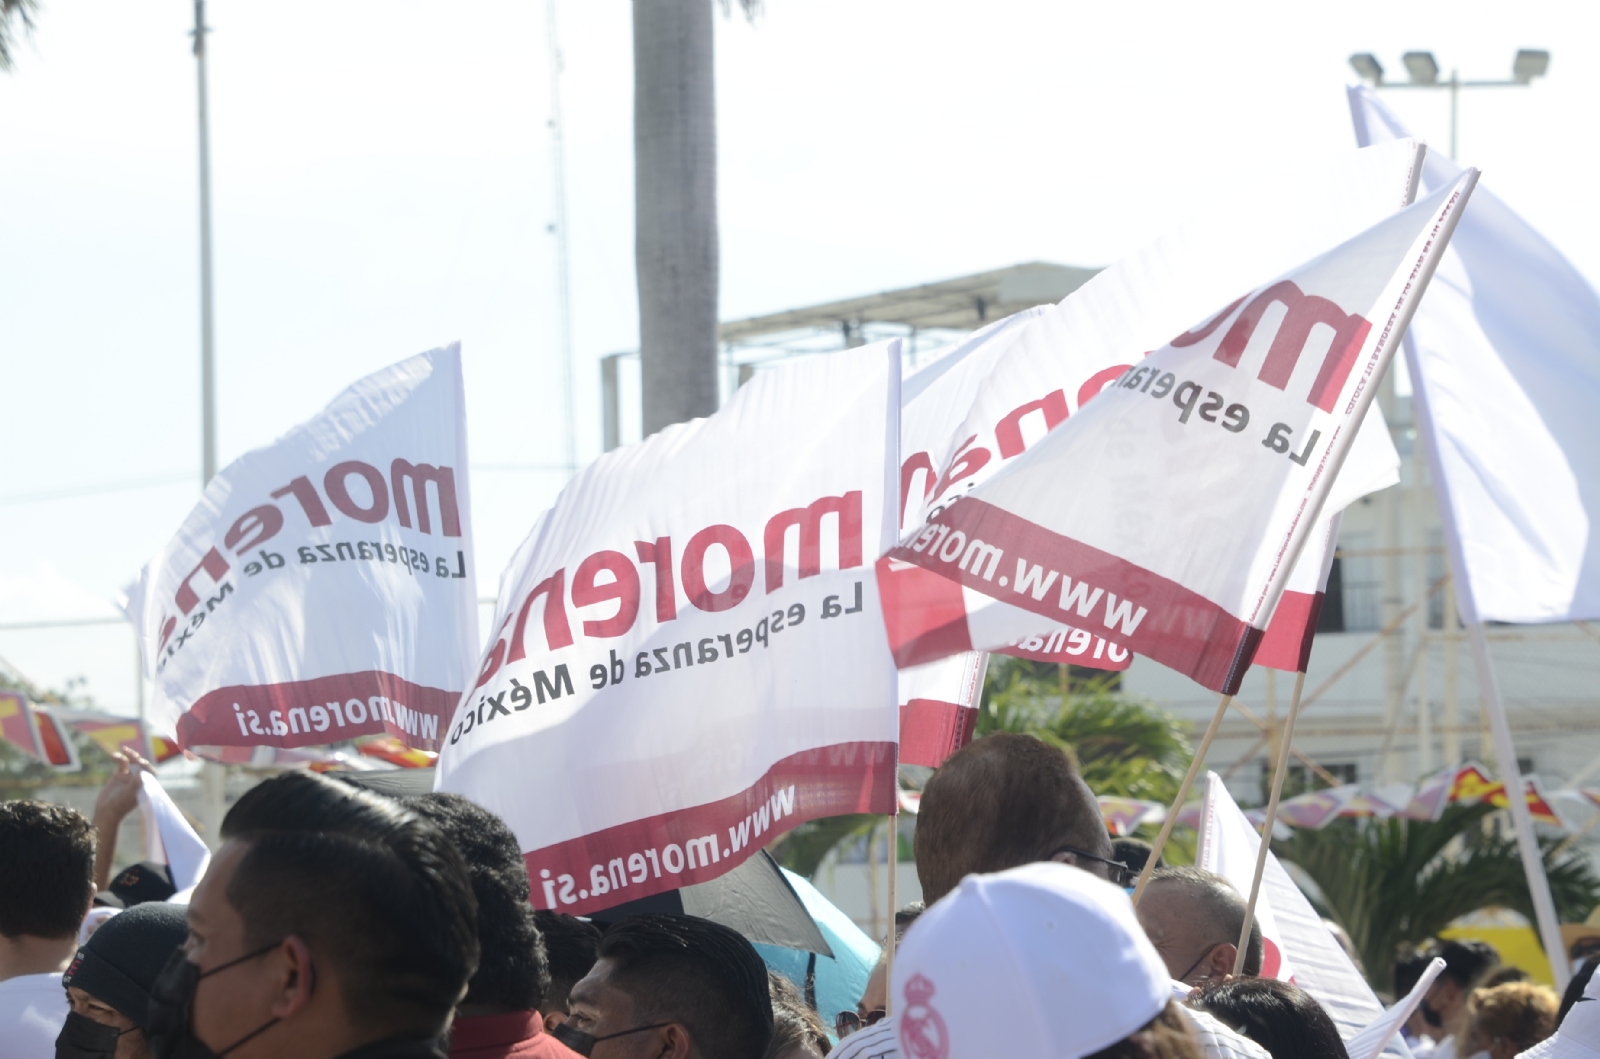 Morena Quintana Roo se prepara para el registro de candidatos a senadores y diputados federales